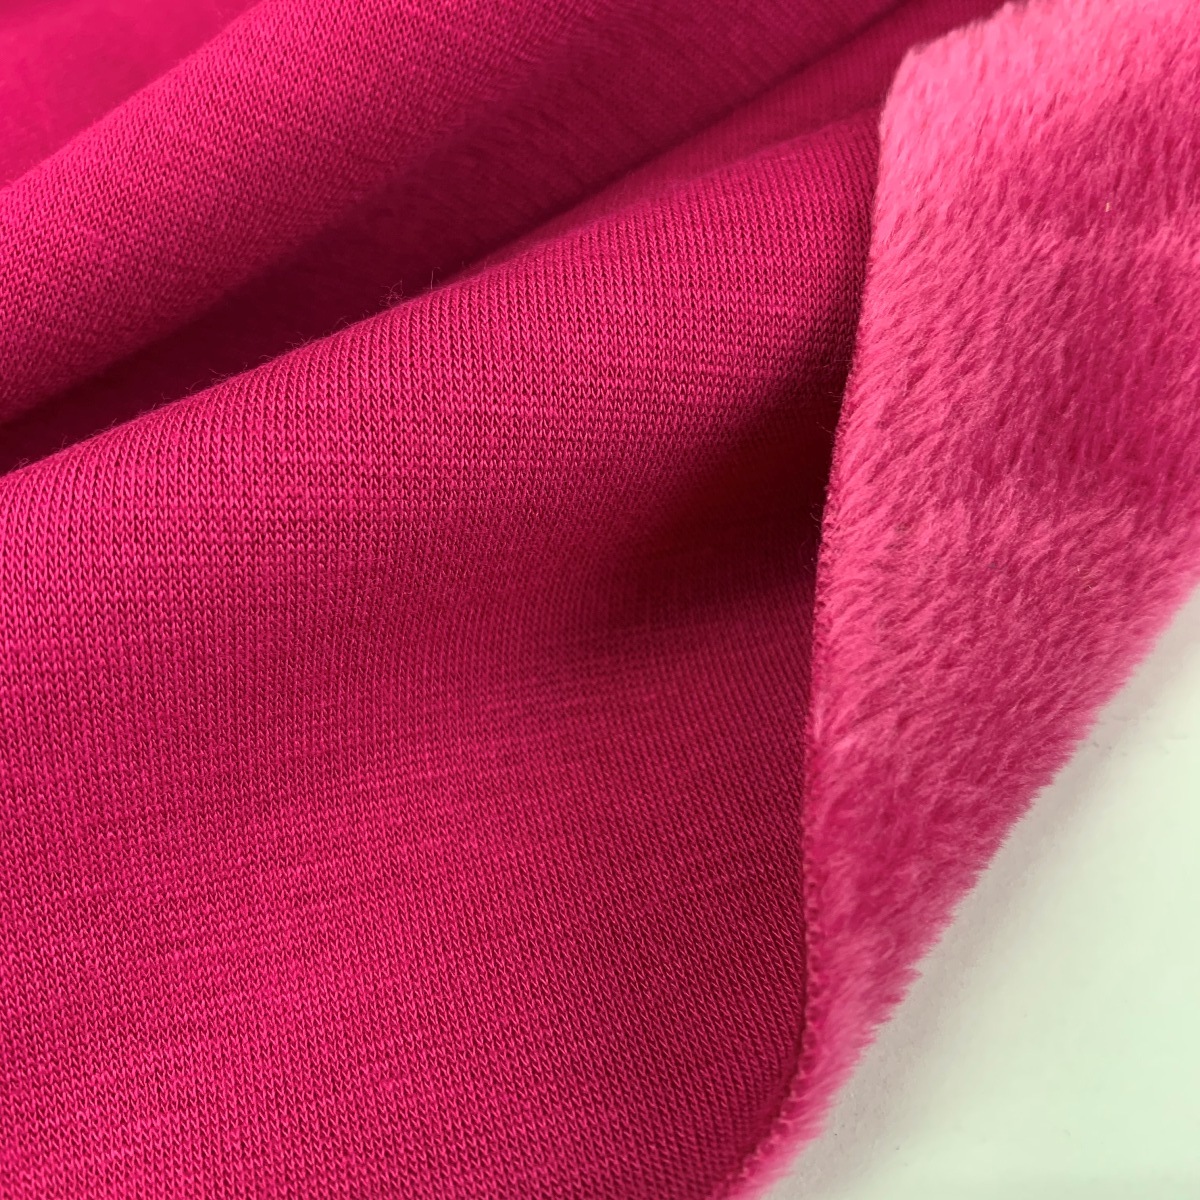 Alpen Fleece - Hot Pink - cotton polyester fleece jersey loungewear fabric - fold